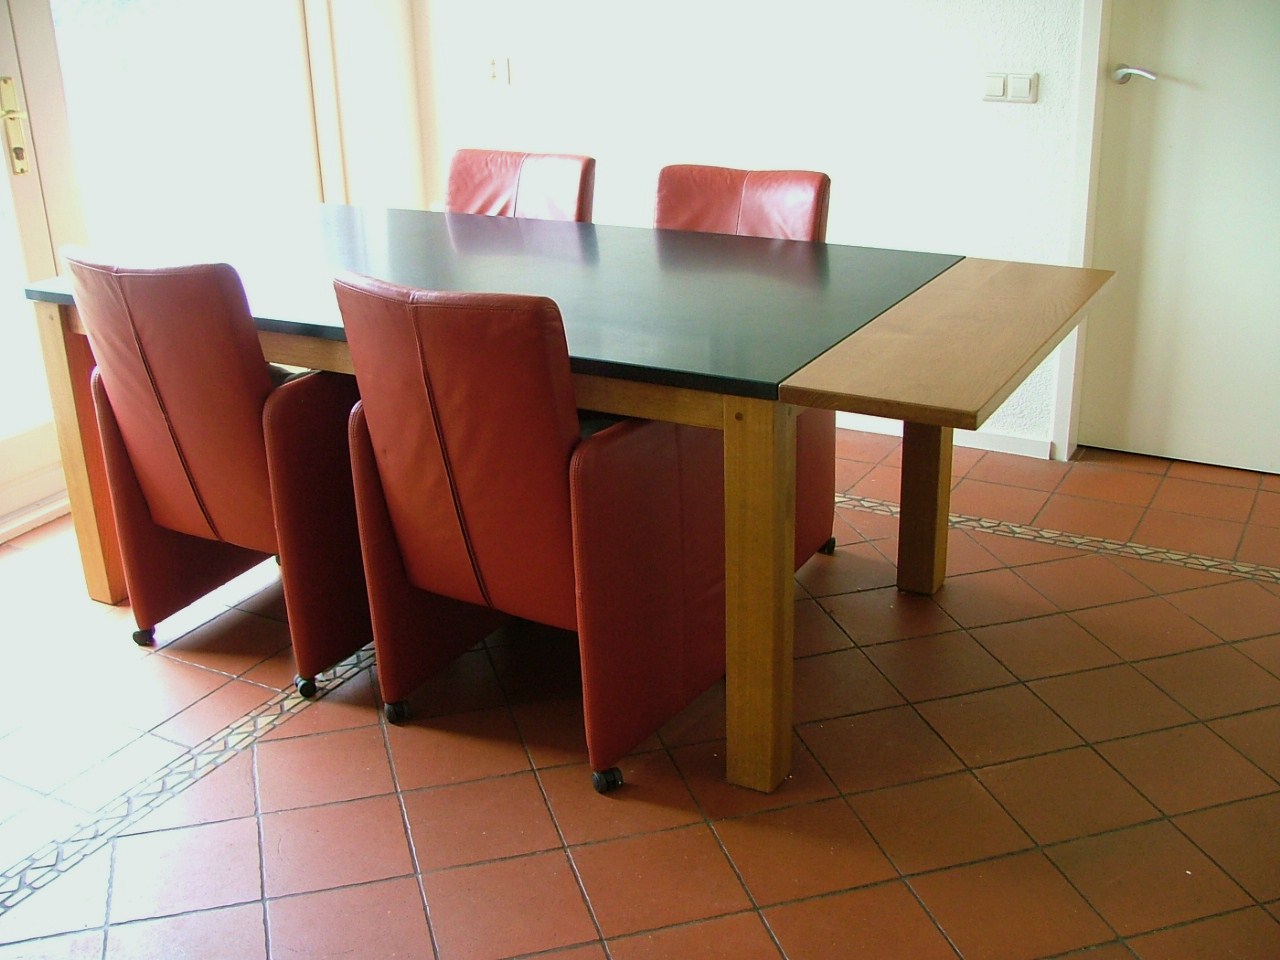 Eetkamertafel met granieten blad voorzien van extra opklapbare ruimte